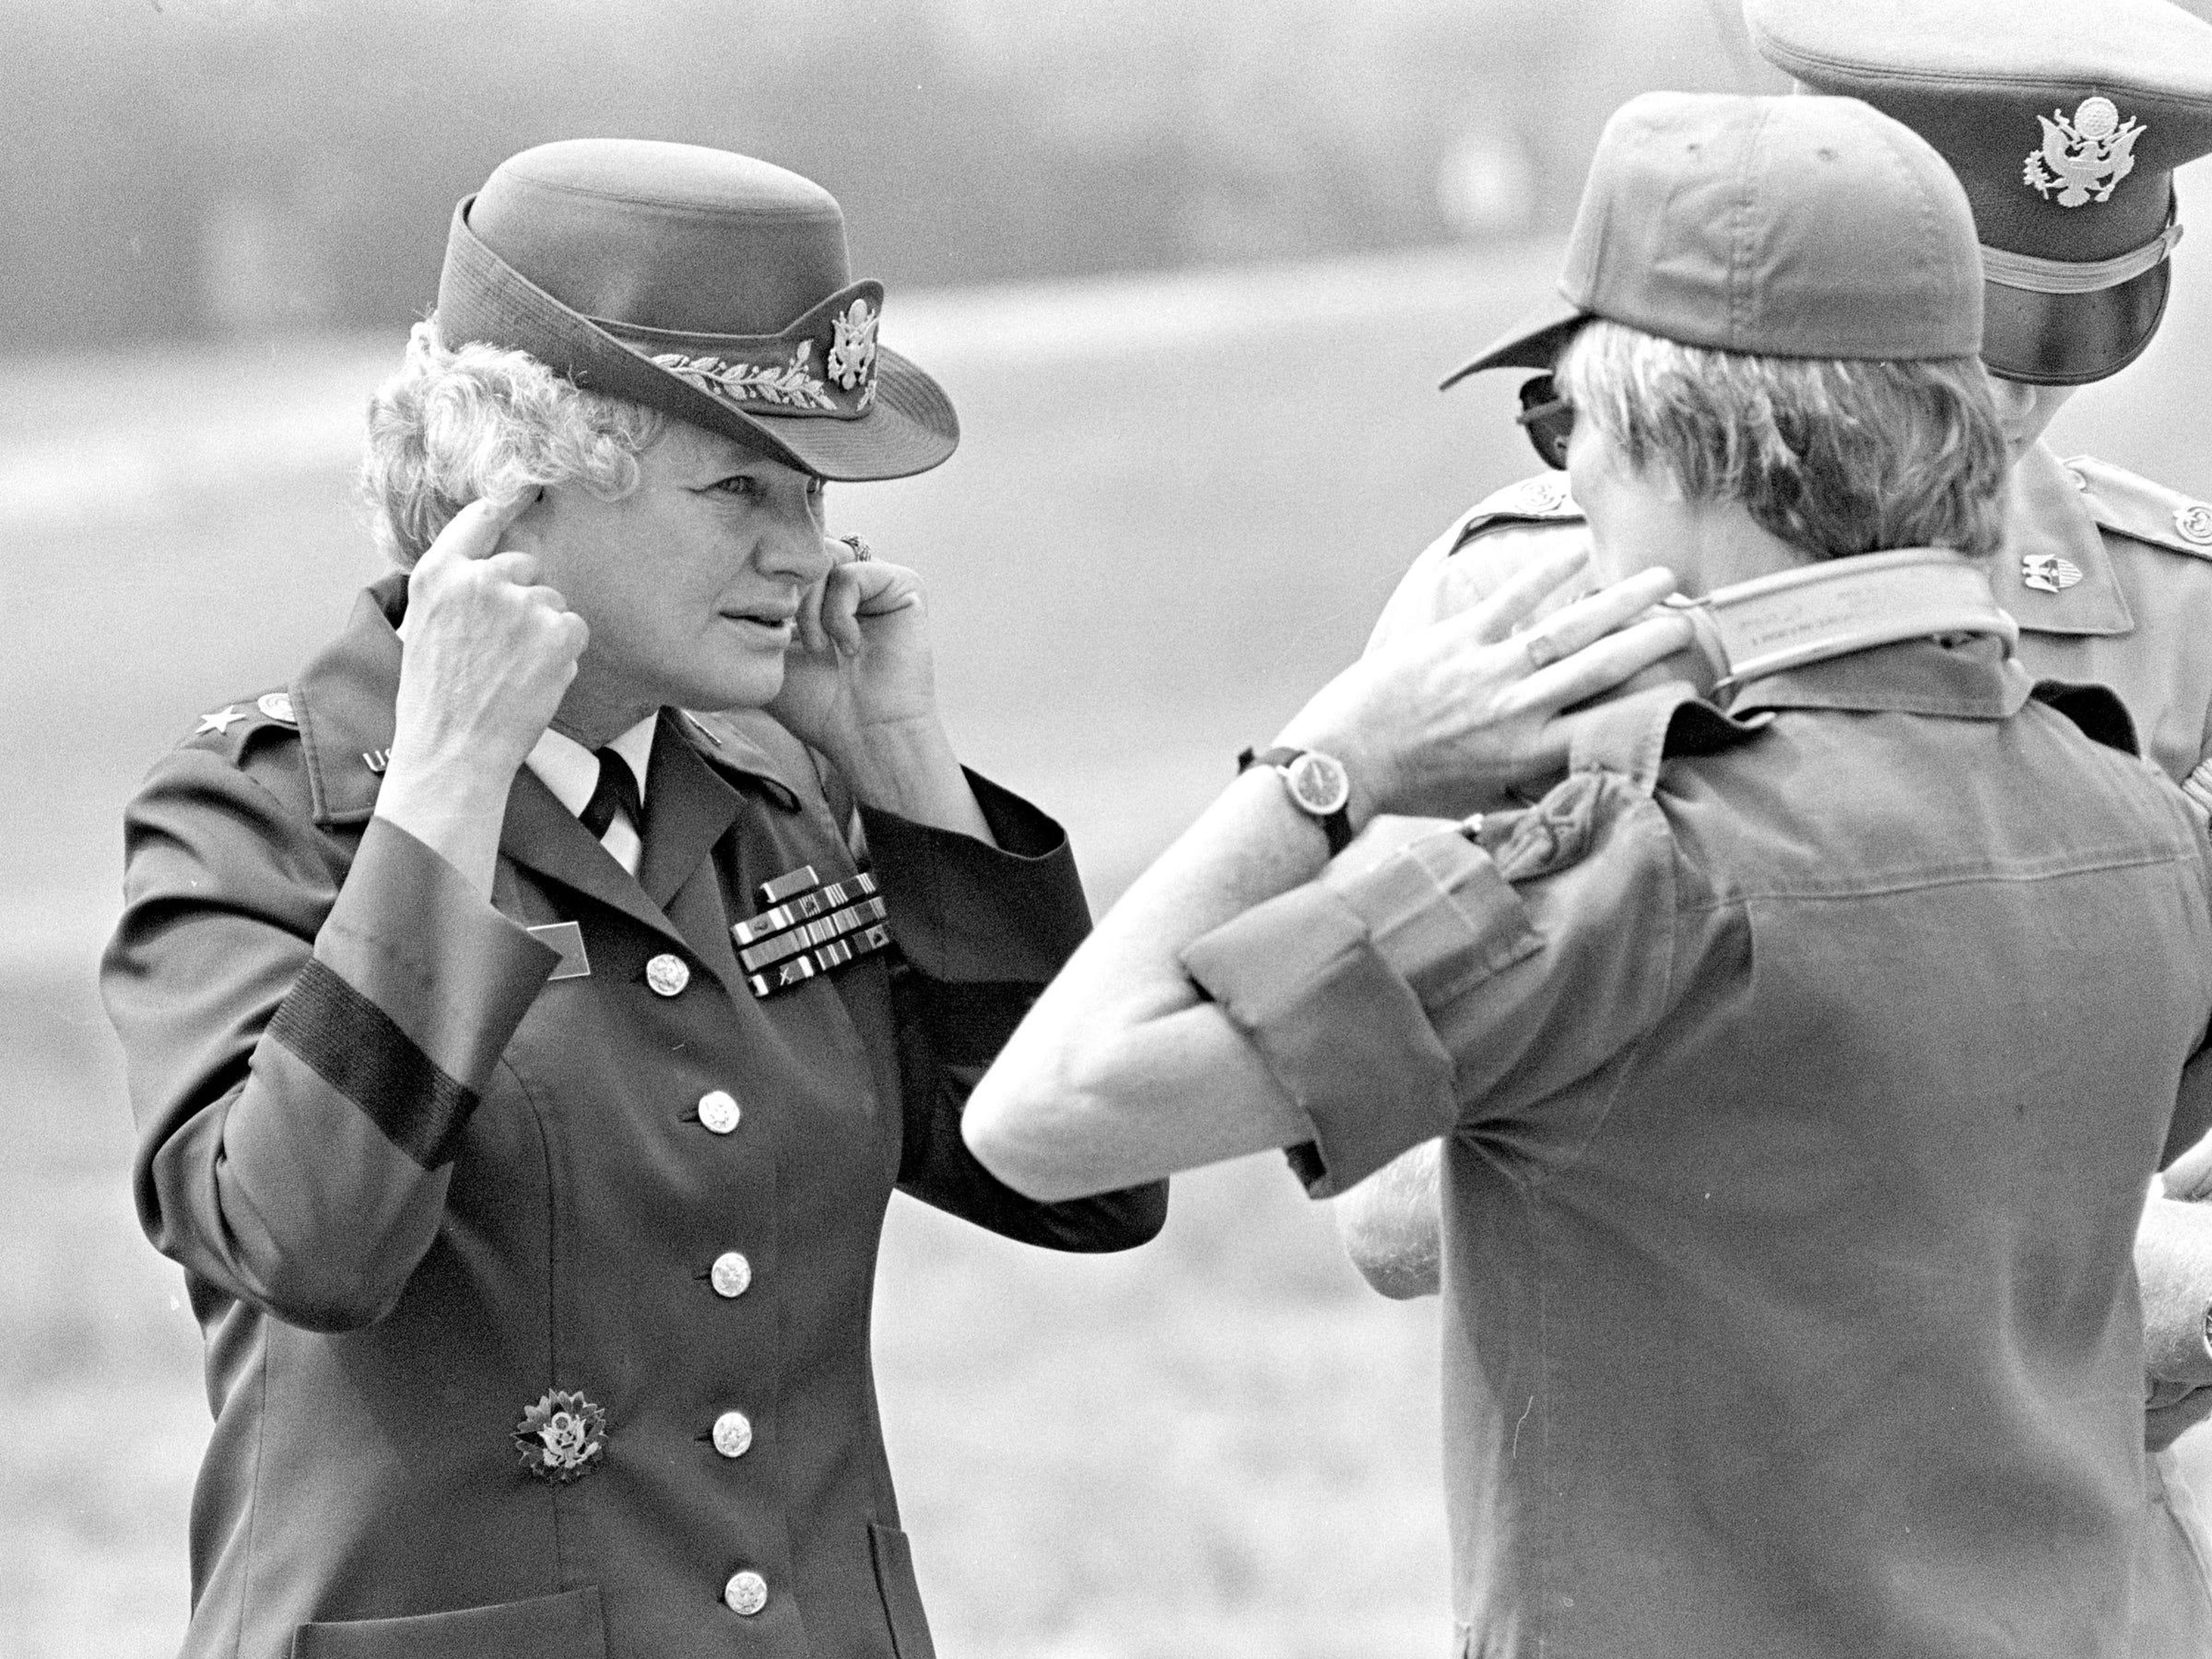 Mary E. Clarke en el Centro de Policía Militar de Fort McClellan en 1978.